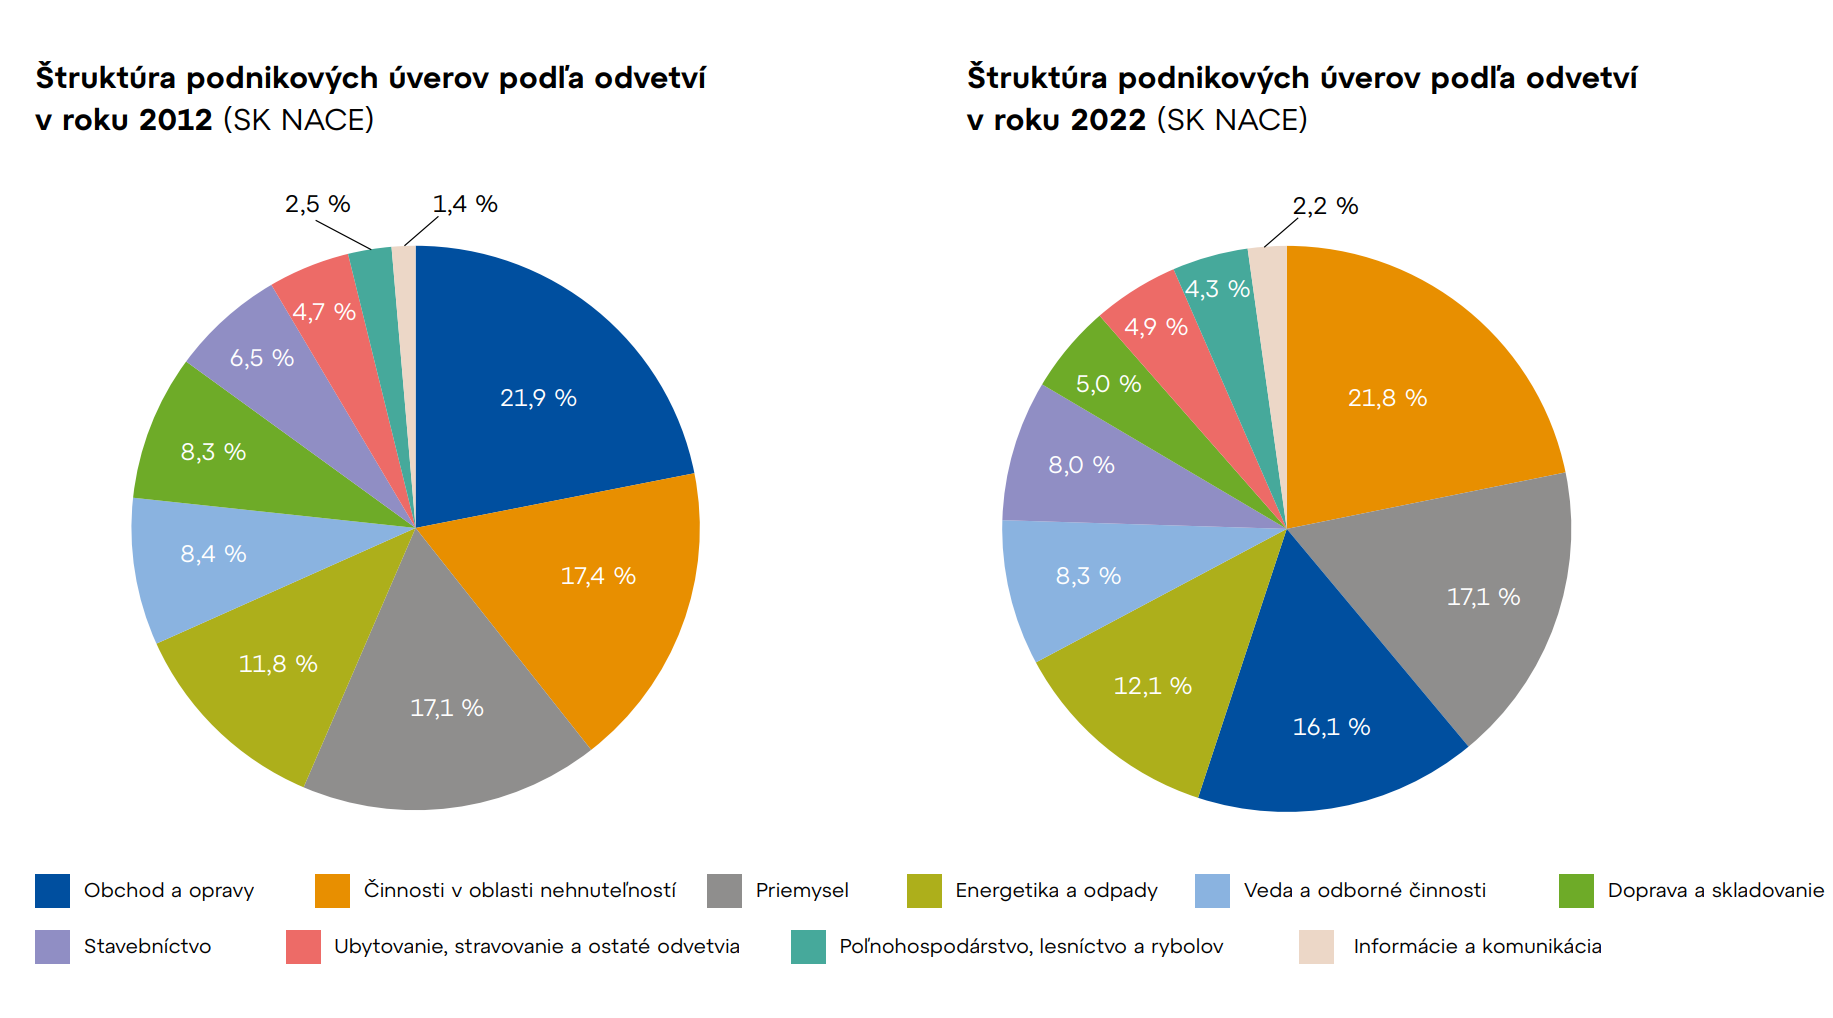 Štruktúra podnikových úverov podľa odvetví 
v roku 2012 a 2022 (SK NACE)